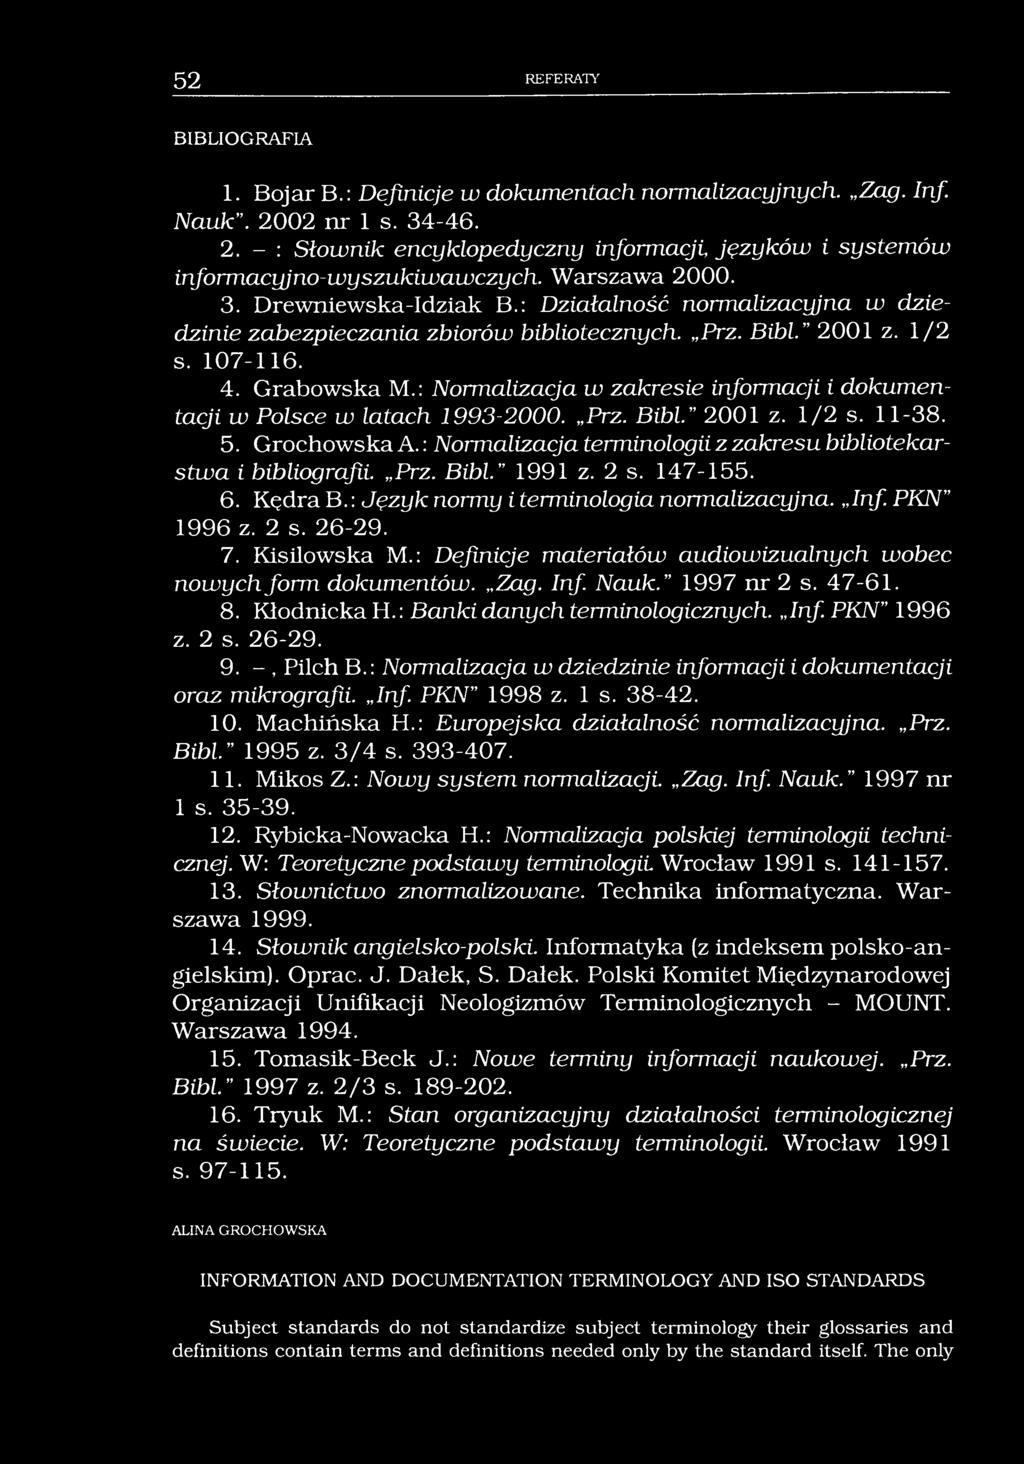 52 REFERATY BIBLIOGRAFIA 1. Bojar B.: Definicje w dokumentach normalizacyjnych. Zag. Inf. Nauk. 2002 nr 1 s. 34-46. 2. - : Słownik encyklopedyczny informacji, języków i systemów informacyjno-wyszukiwawczych.